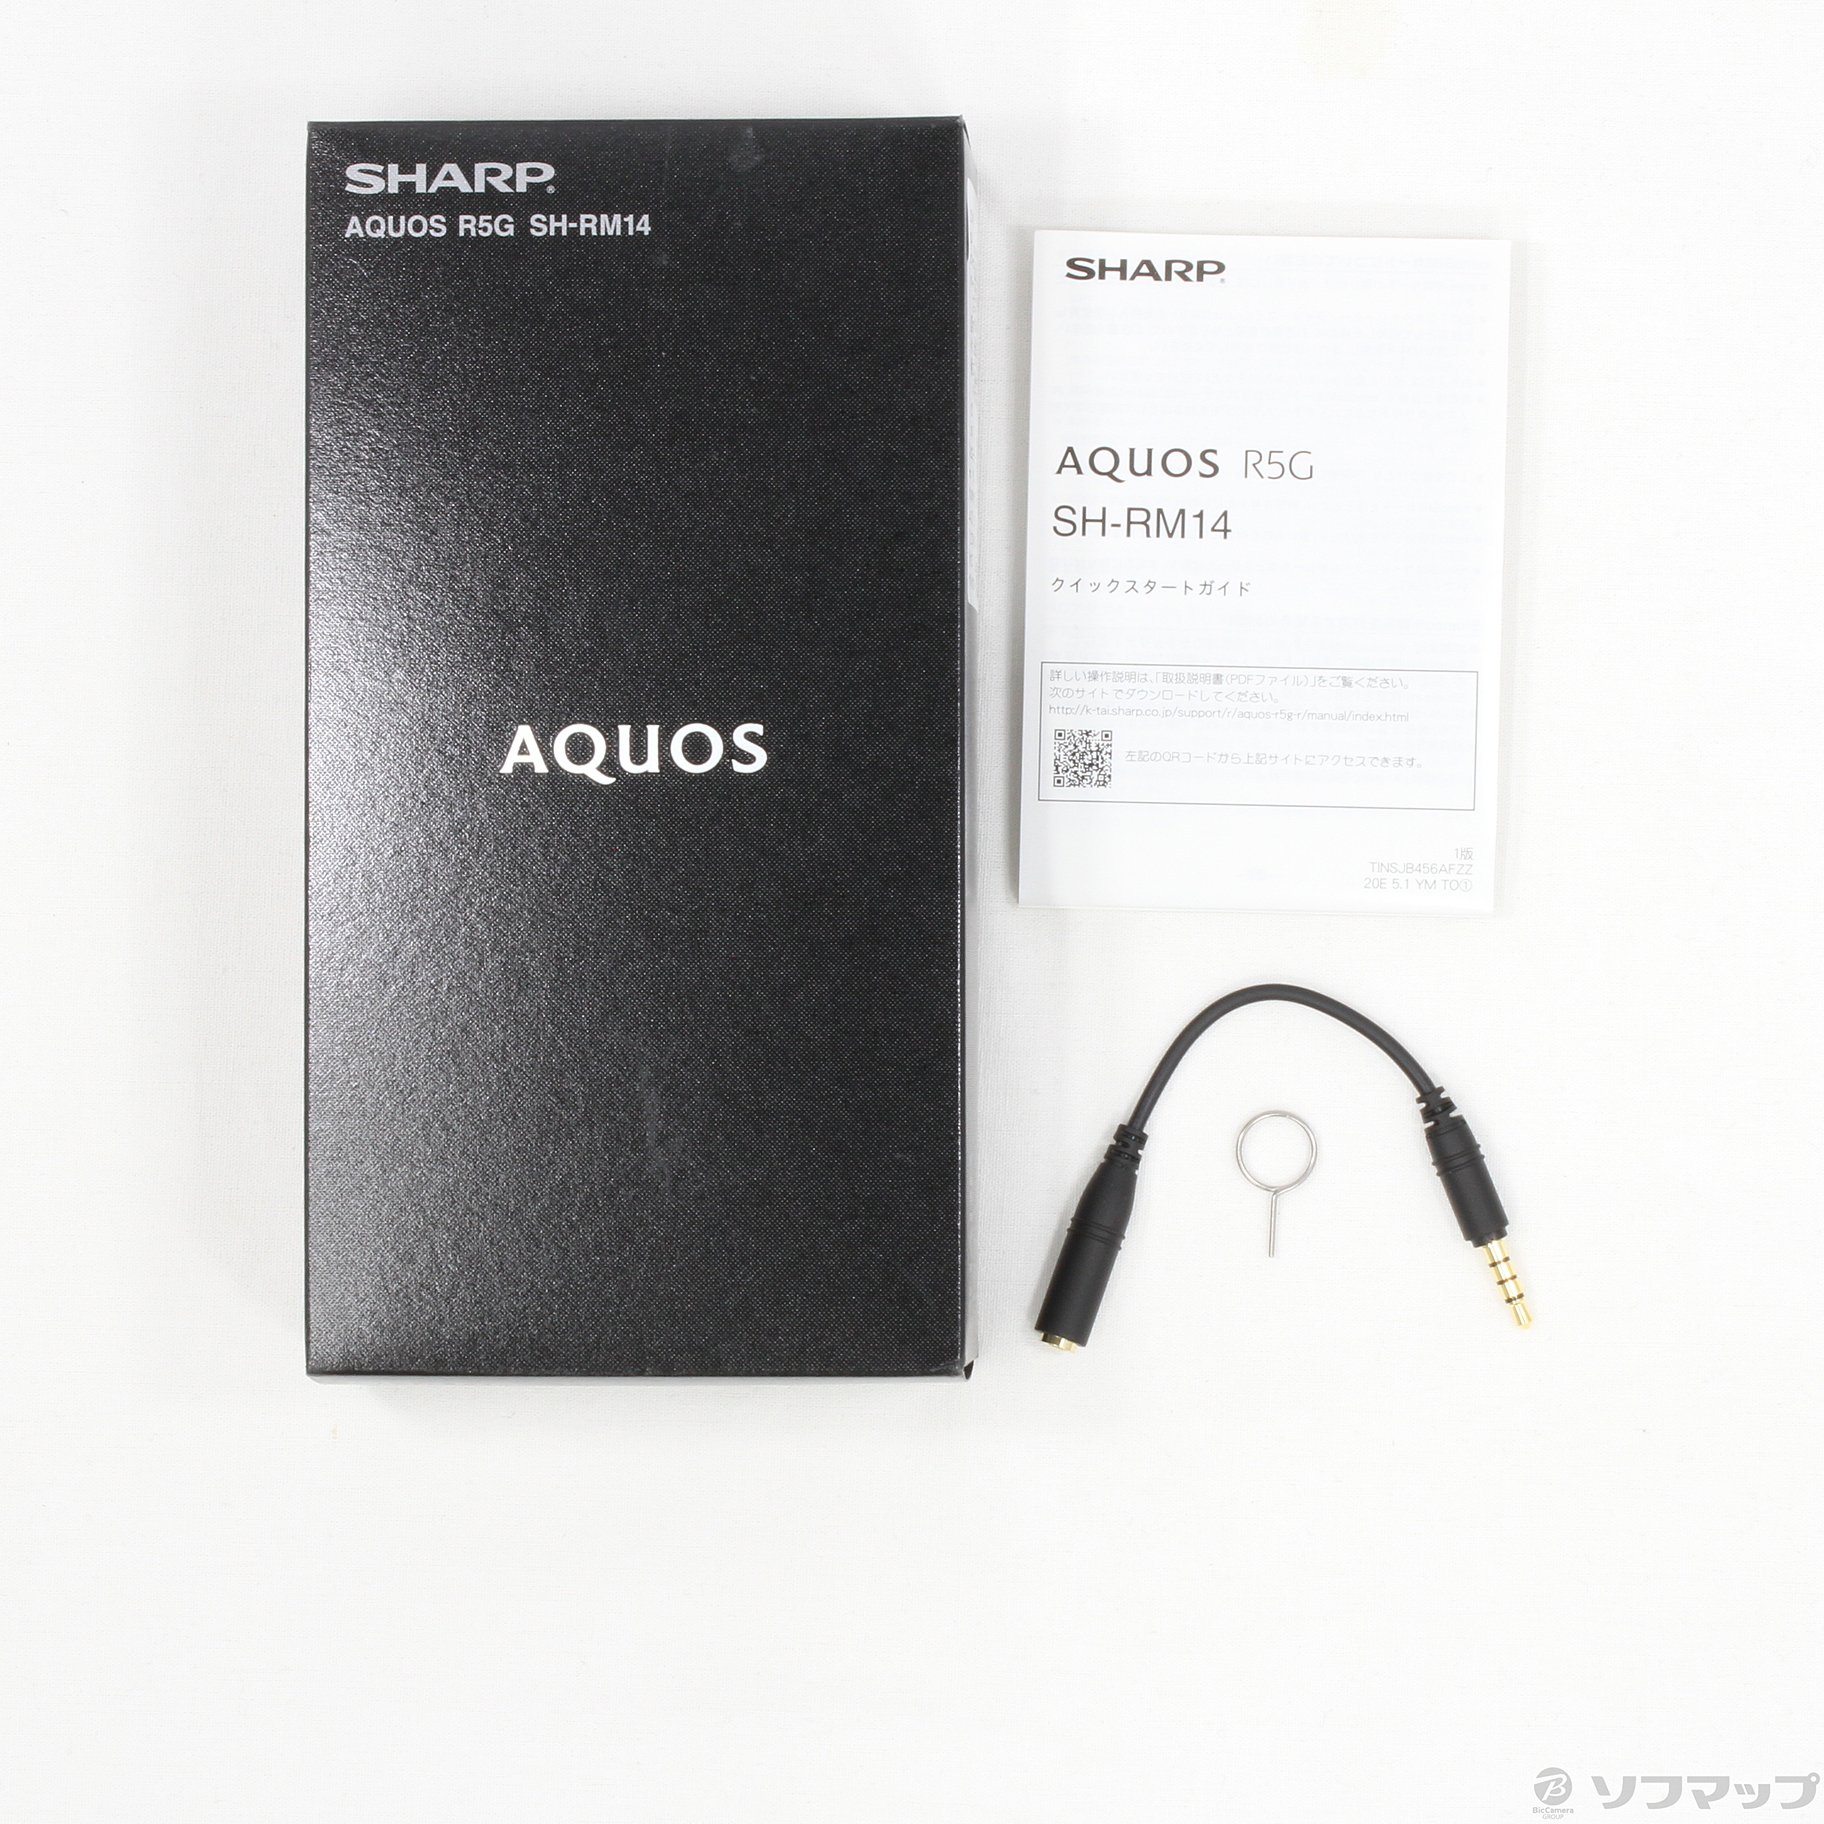 AQUOS R5G 楽天版 256GB アースブルー SH-RM14 SIMフリー ◇07/27(火)値下げ！